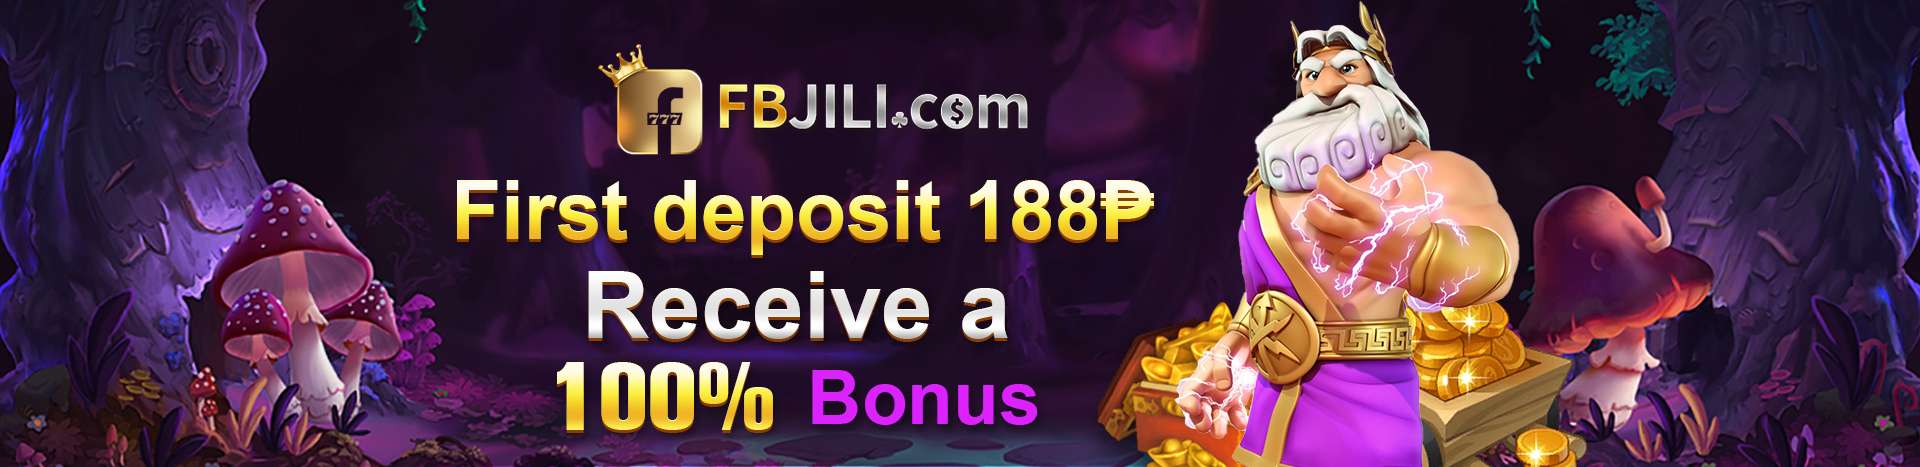 fbjili first deposit bonus